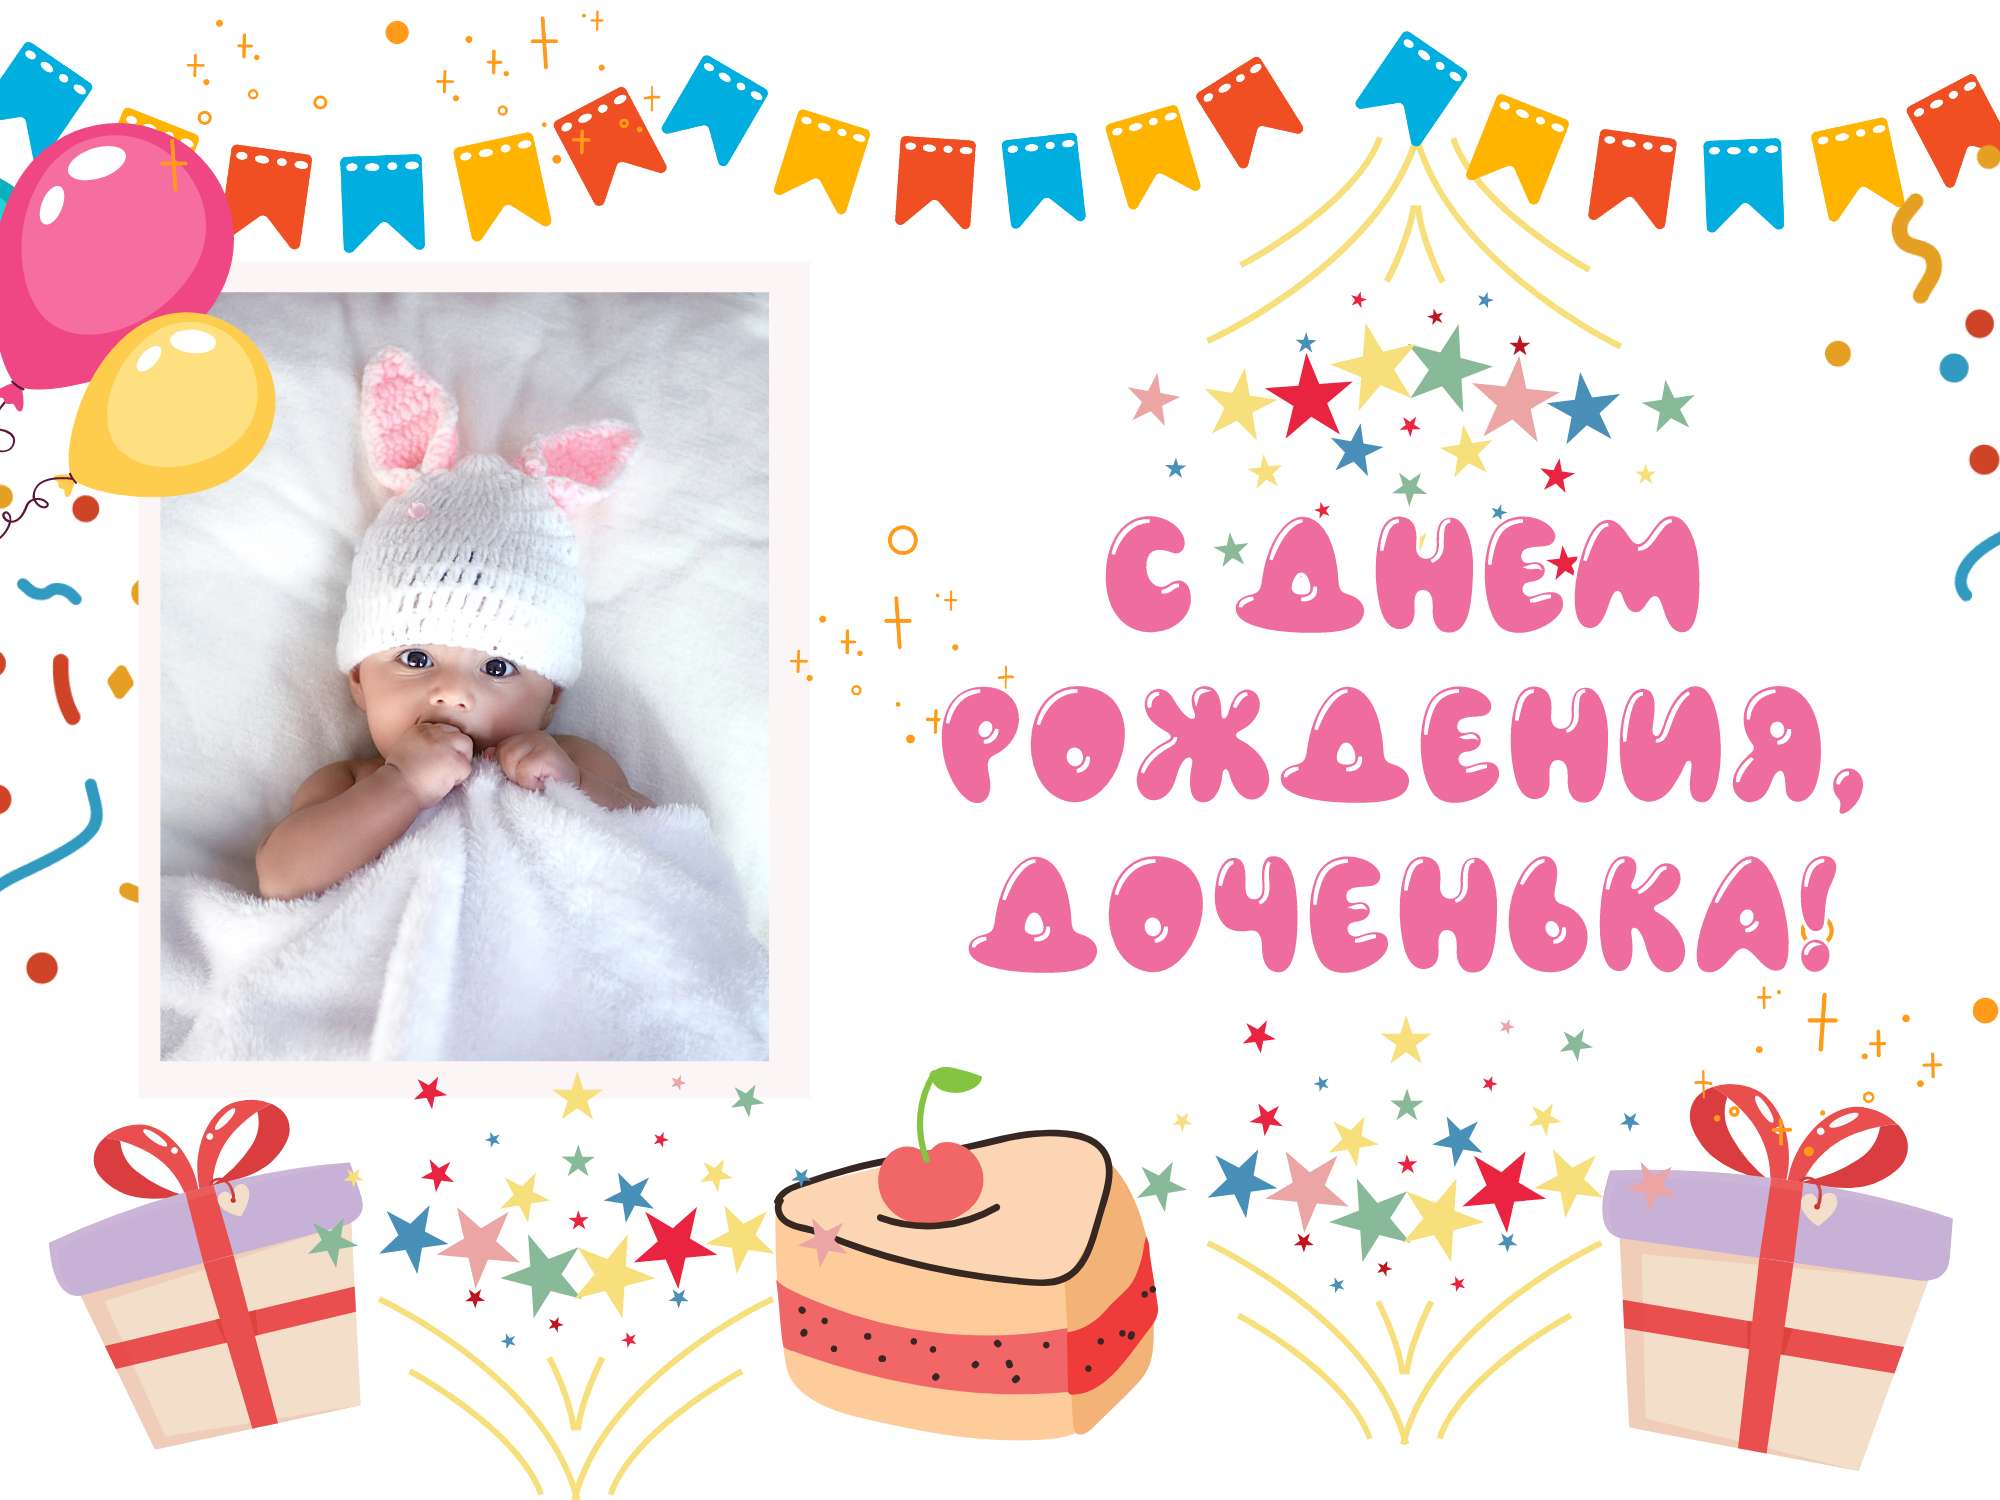 Детская открытка на день рождения девочки с нарисованными подарками, пирожными и флажками и местом для фото